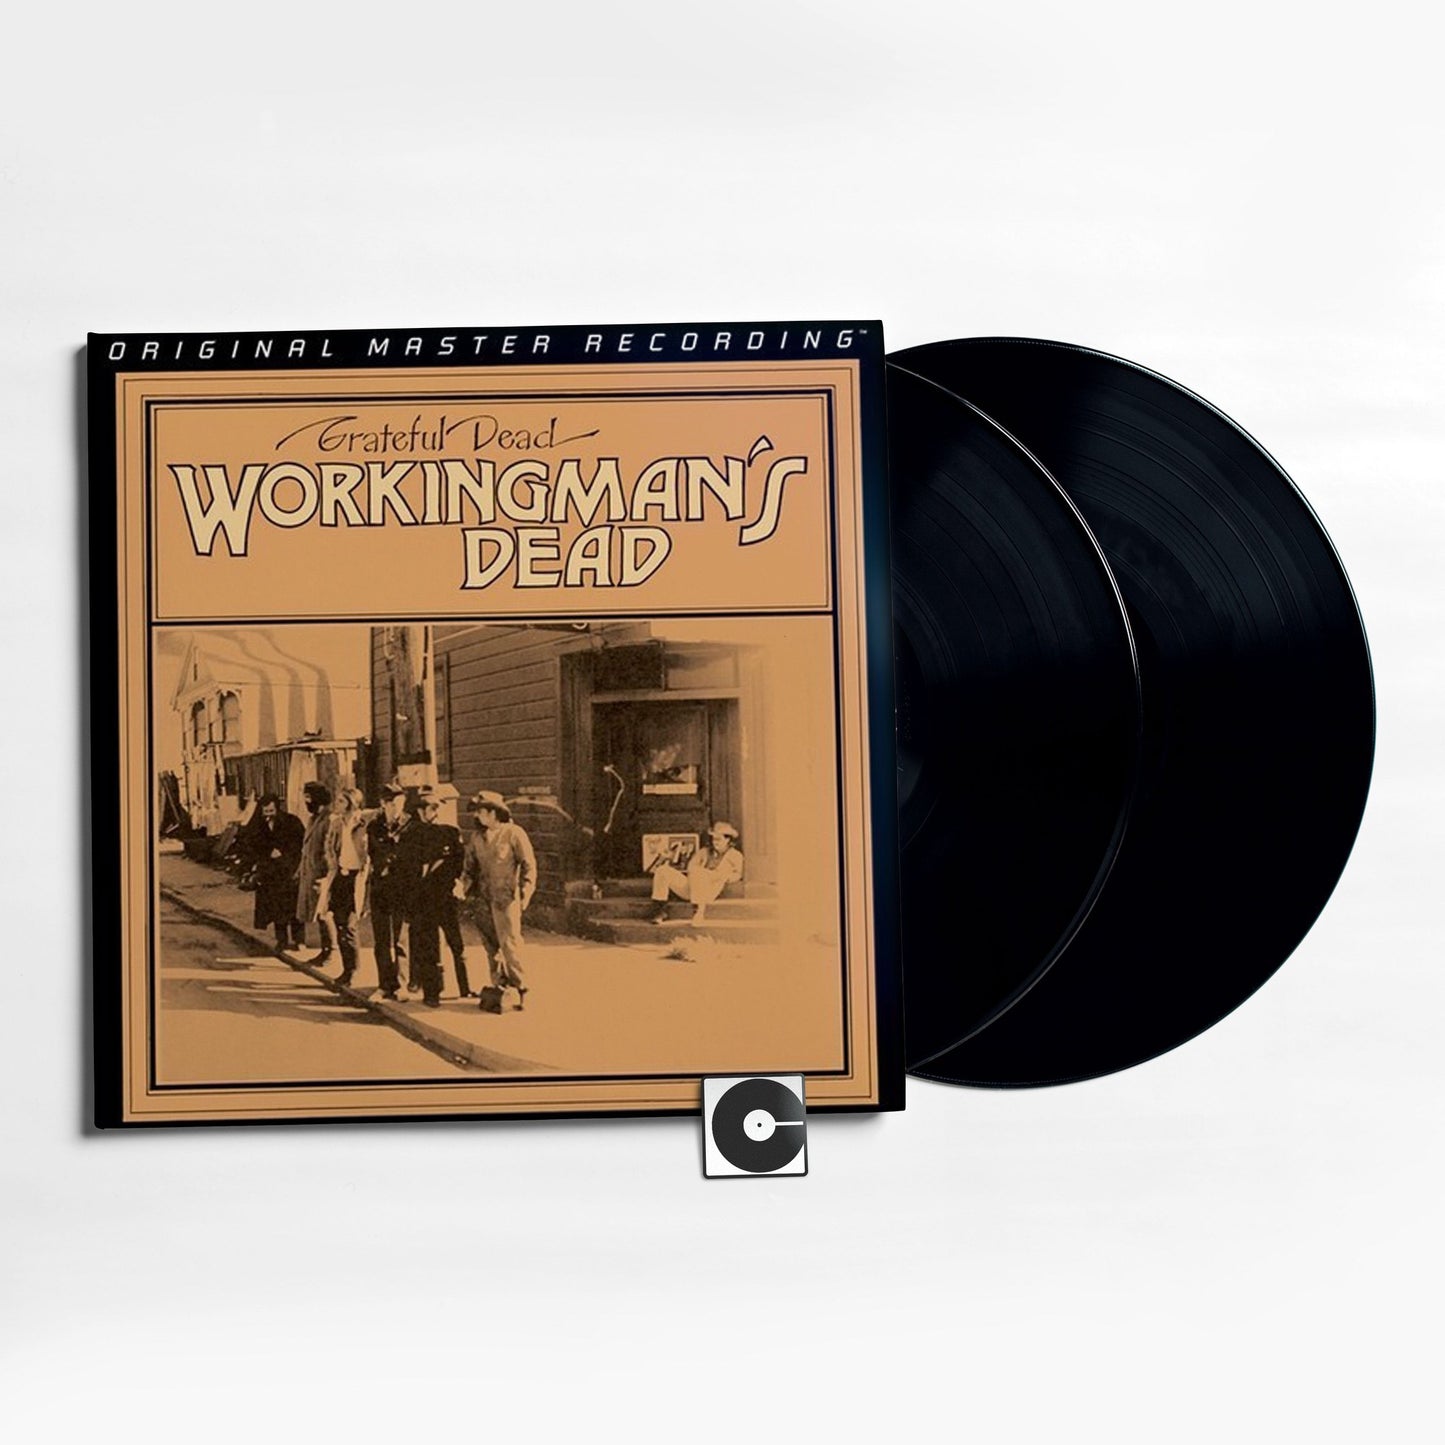 The Grateful Dead - "Workingman's Dead" MoFi